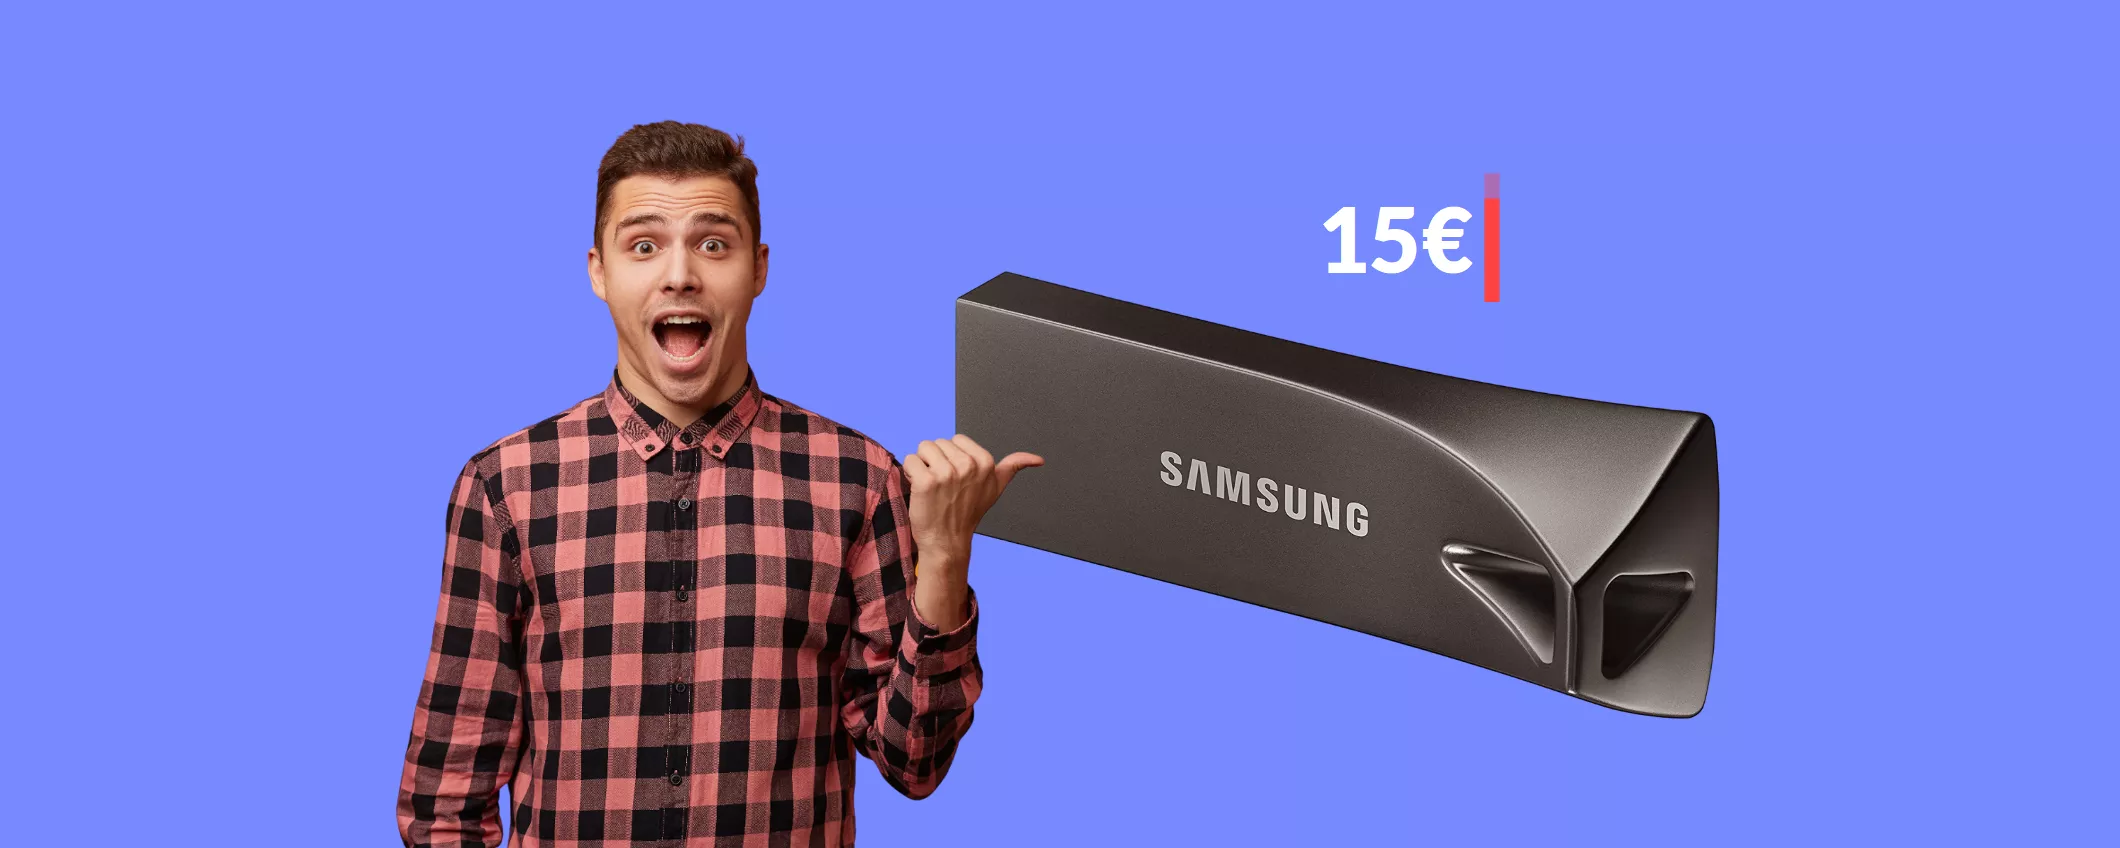 Chiavetta USB 32GB Samsung in sconto: 15€ per questa BOMBA